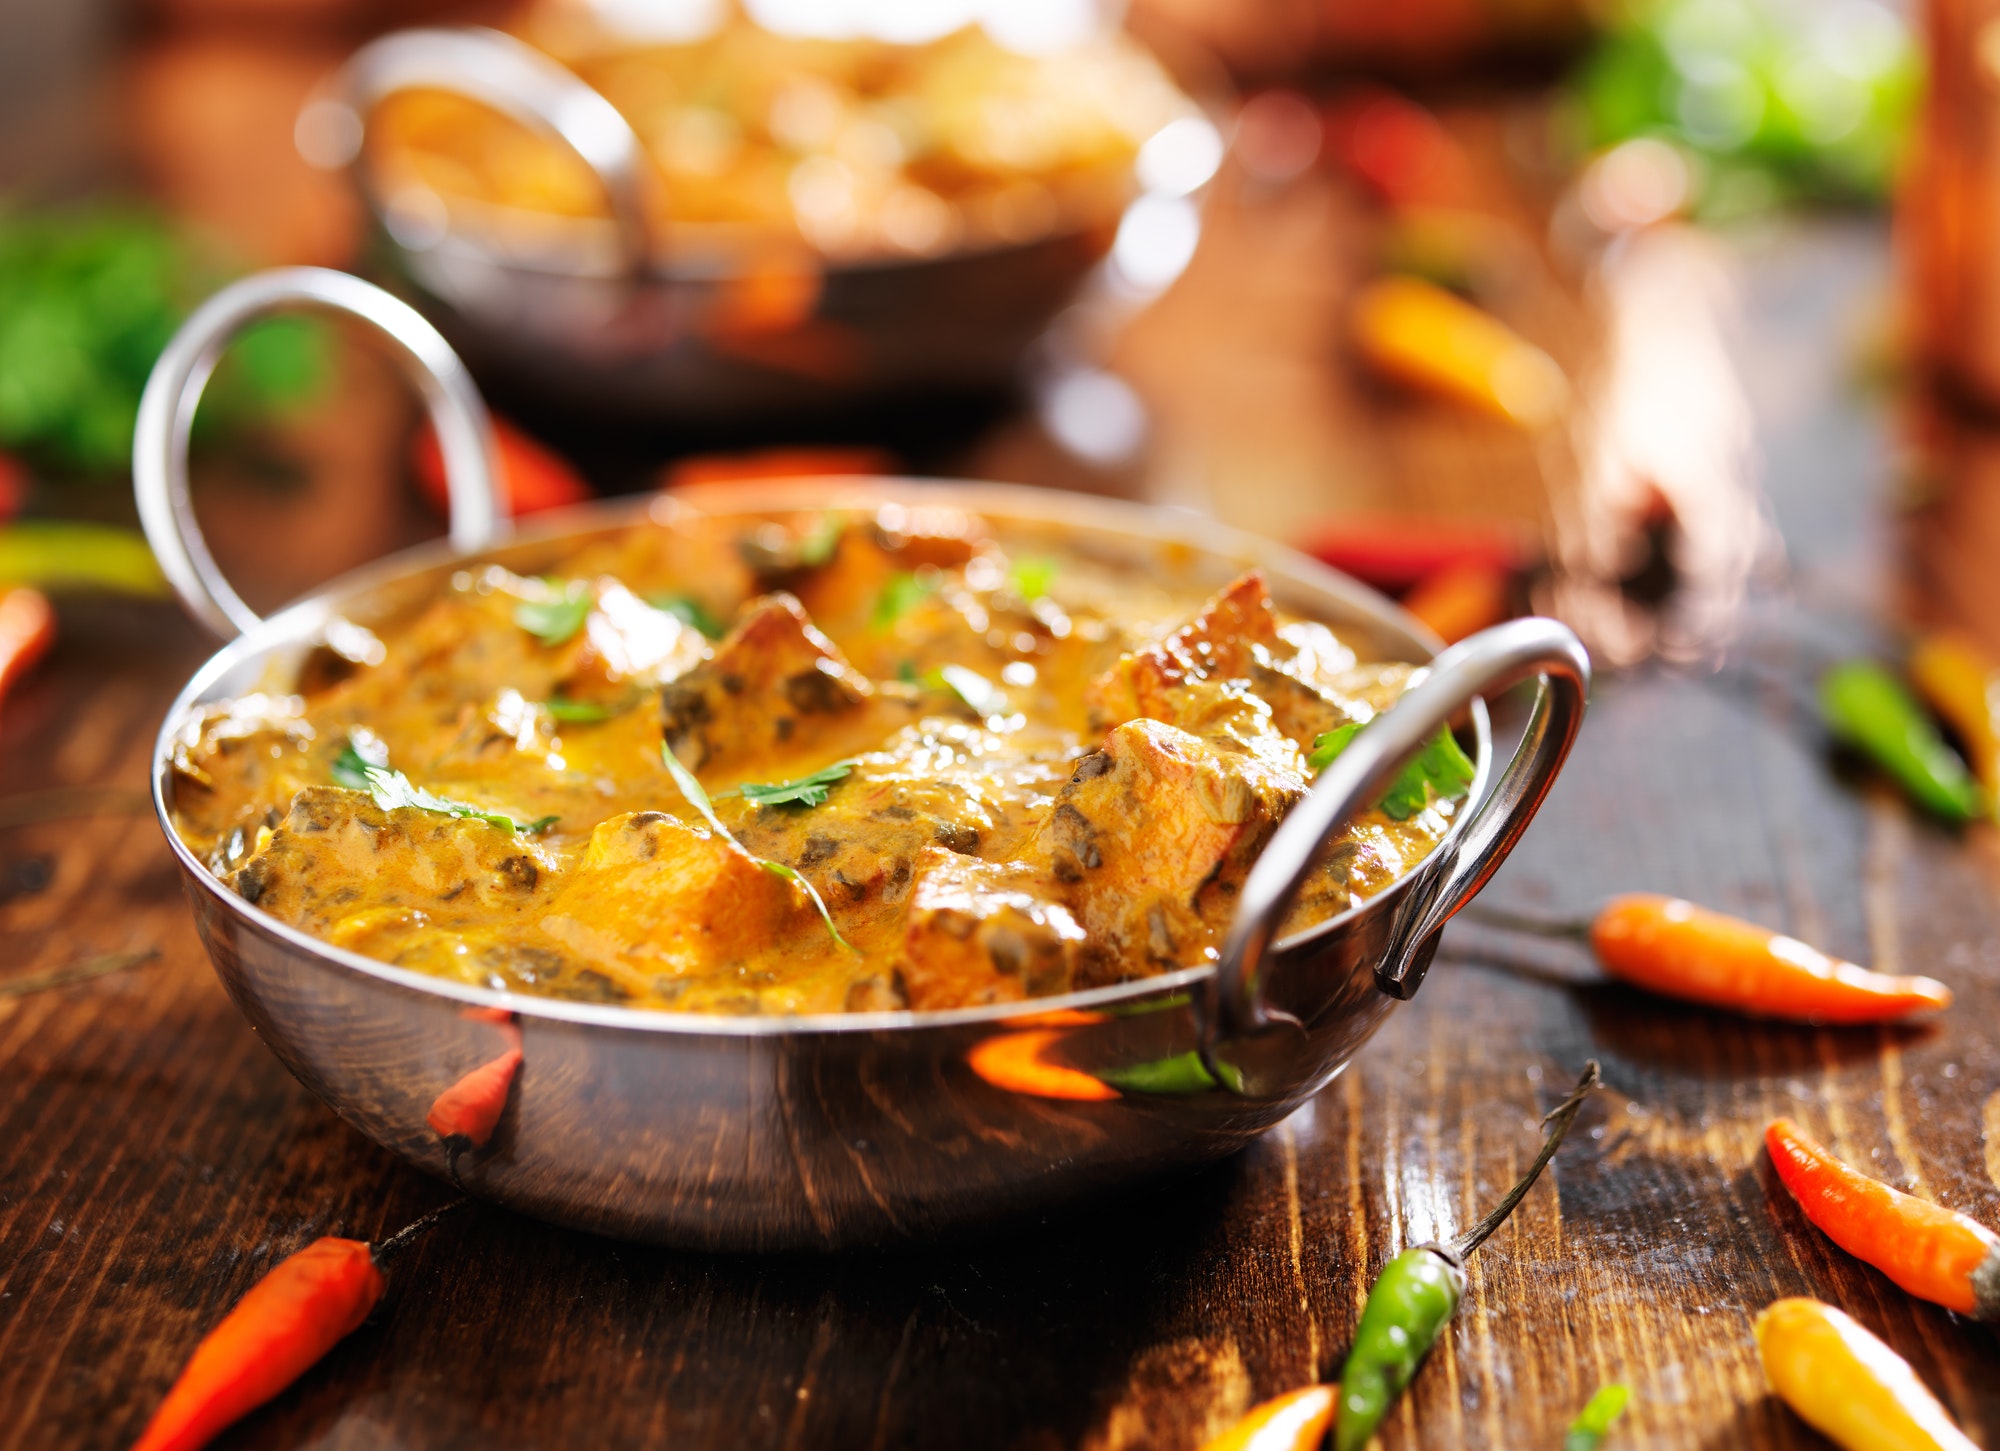 indian food - saag paneer curry dish